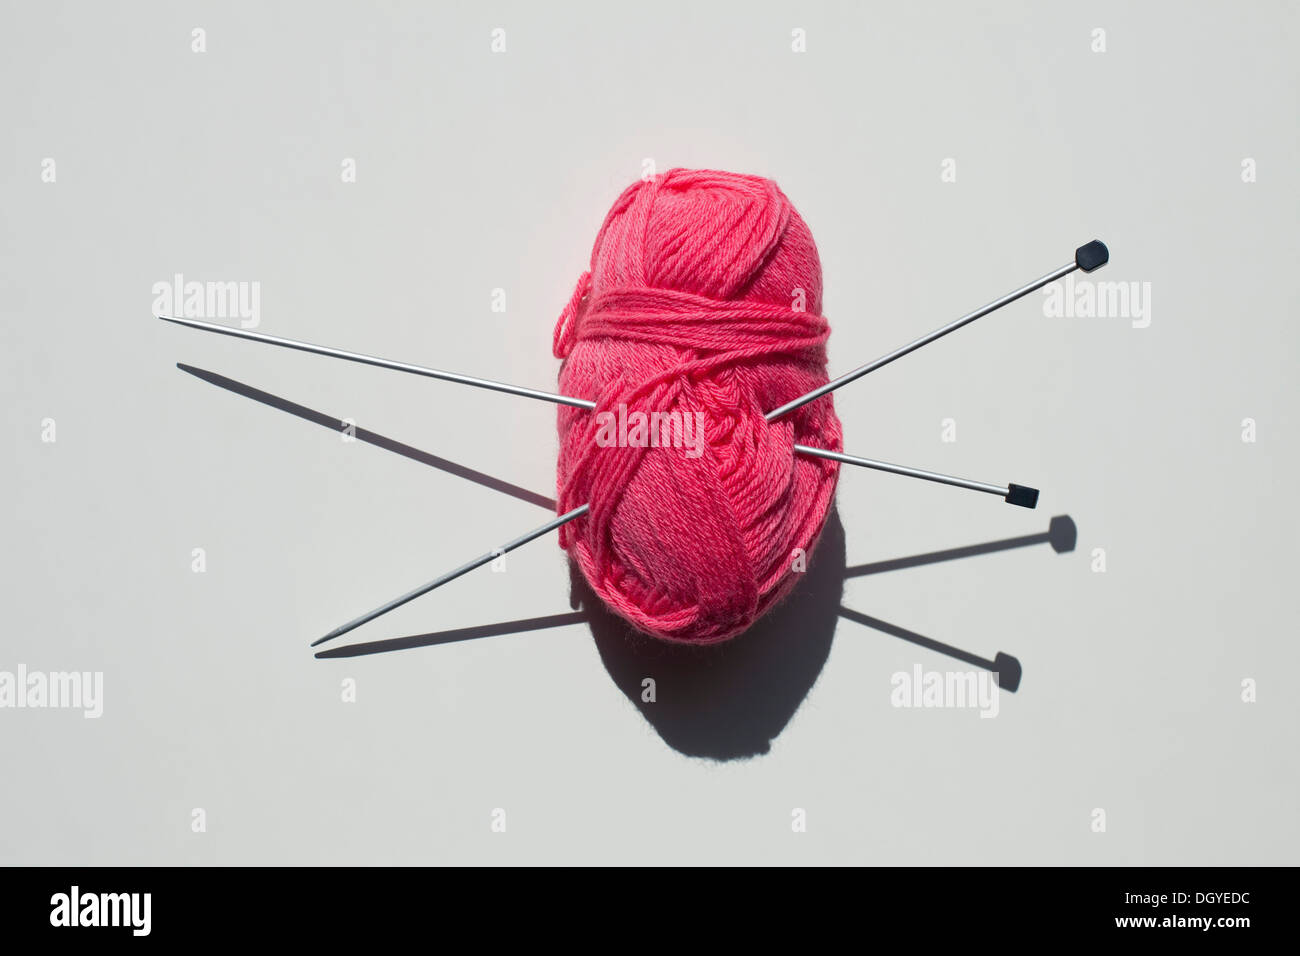 Une paire d'aiguilles à tricoter coincé dans une pelote de laine Banque D'Images